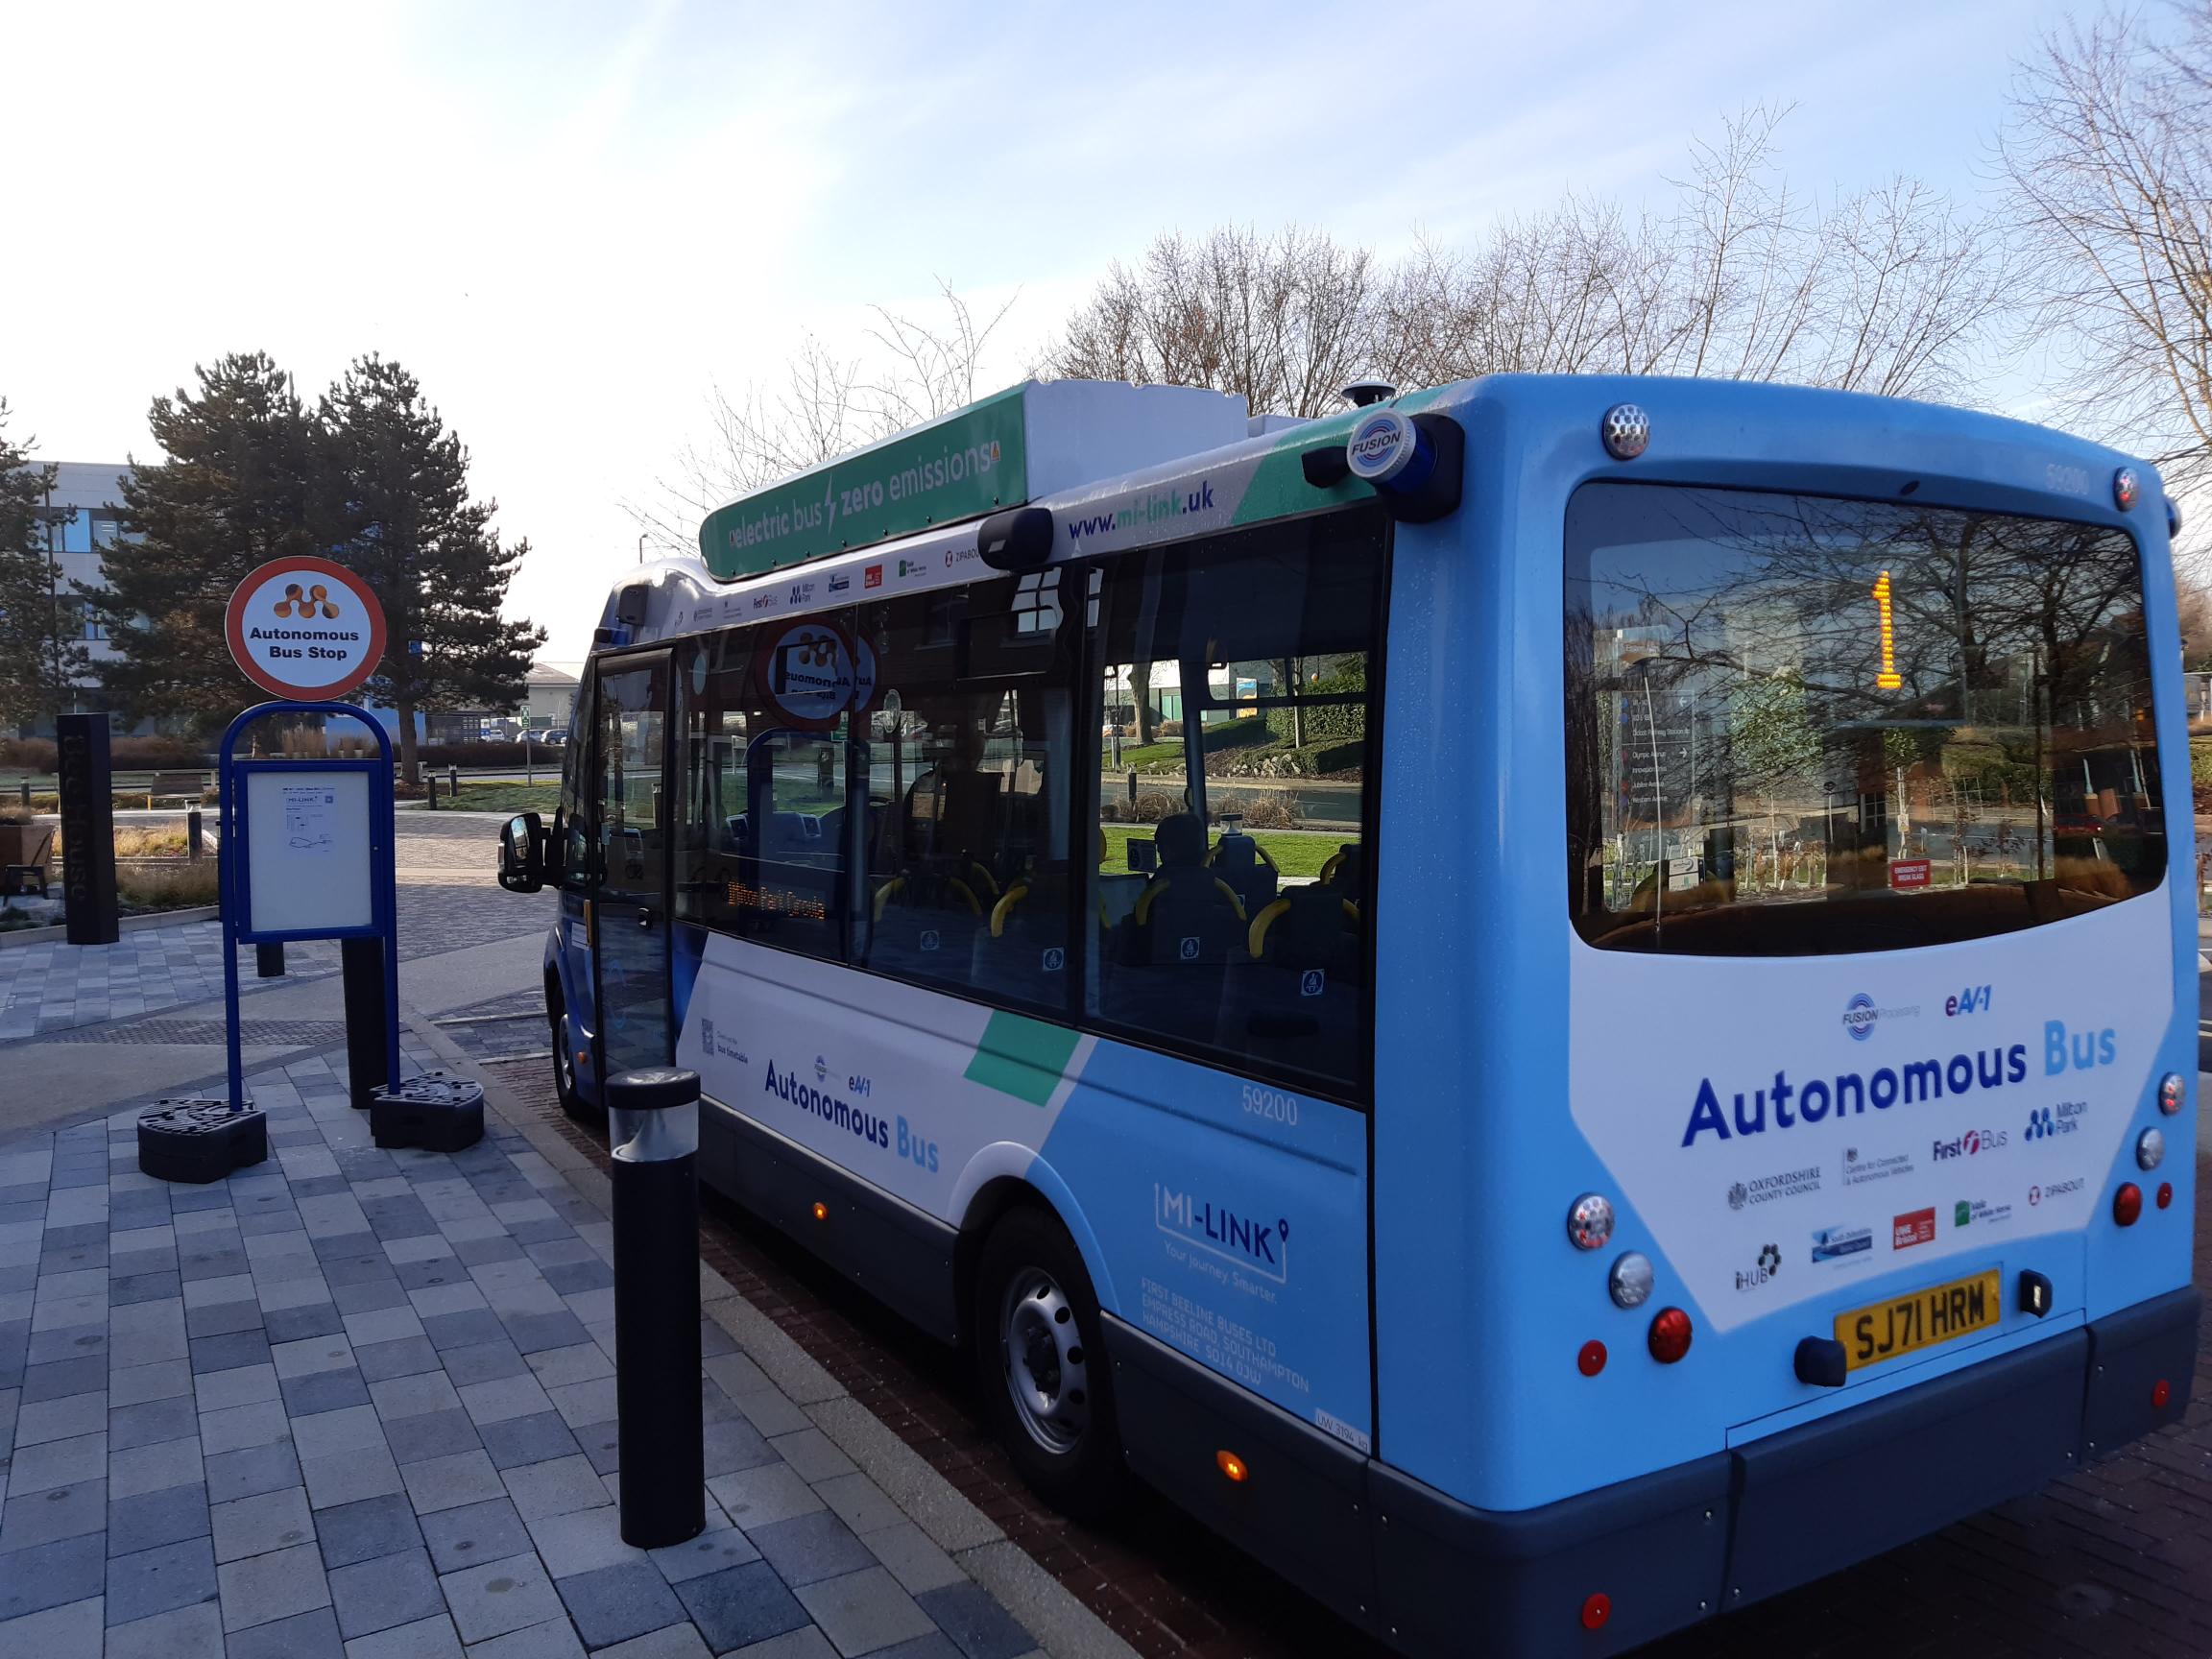 Autonomous, zero-emission bus service goes live in Oxfordshire